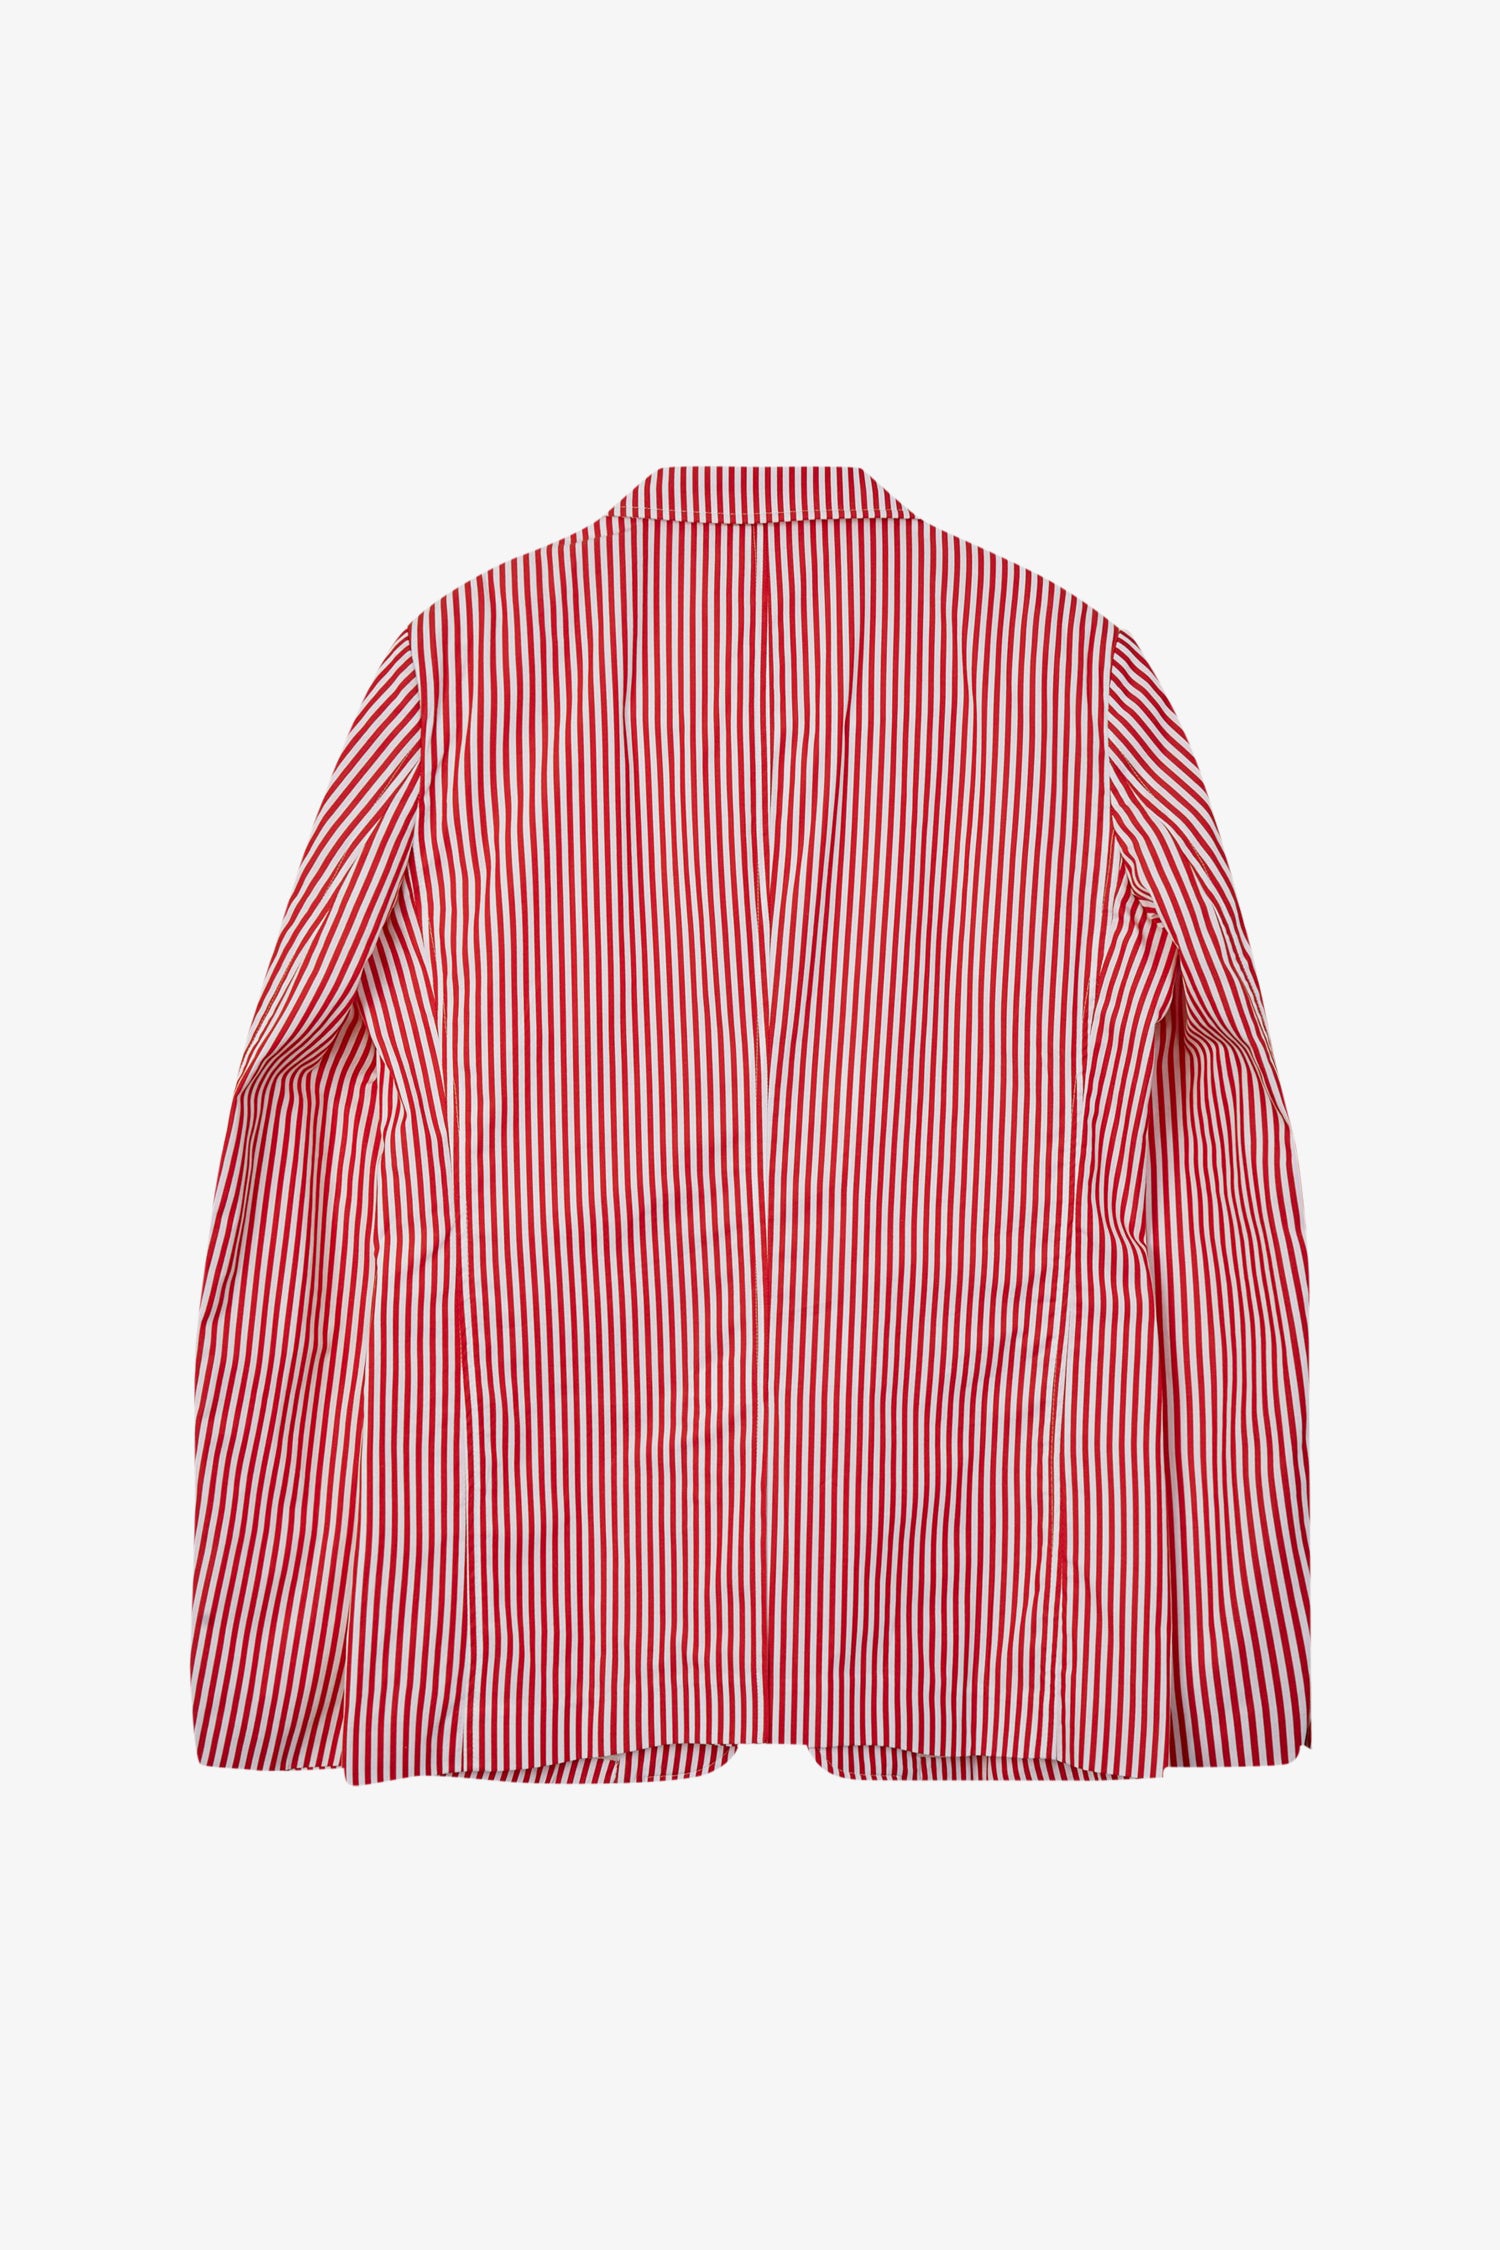 Selectshop FRAME - COMME DES GARÇONS SHIRT Woven Jacket Outerwear Dubai